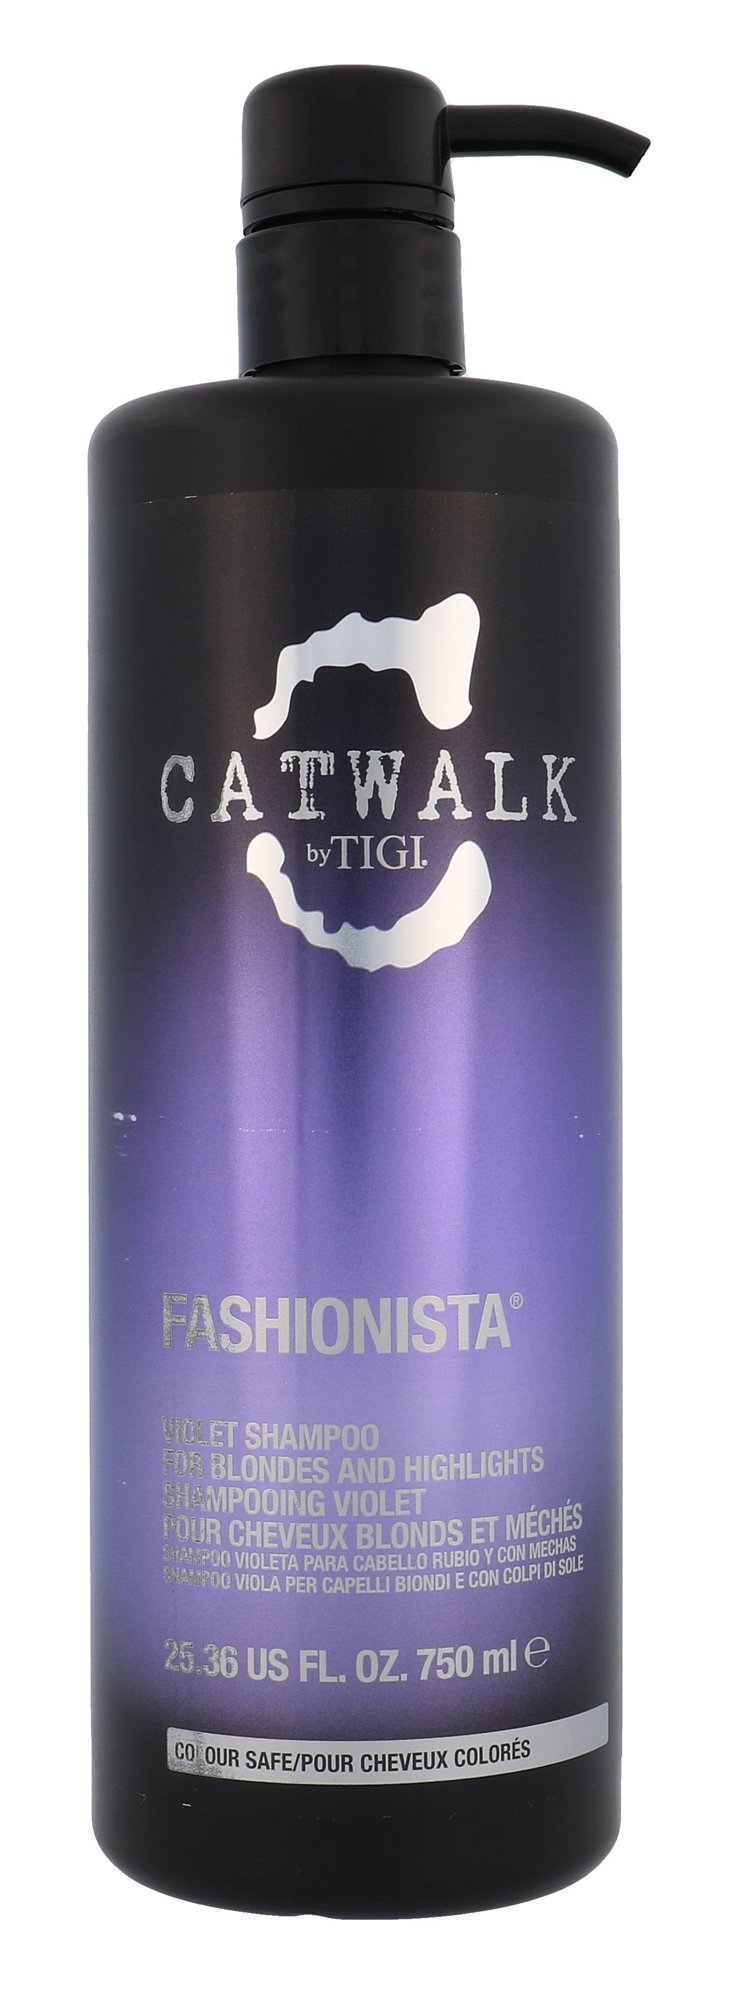 Tigi Catwalk Fashionista Violet 750ml šampūnas